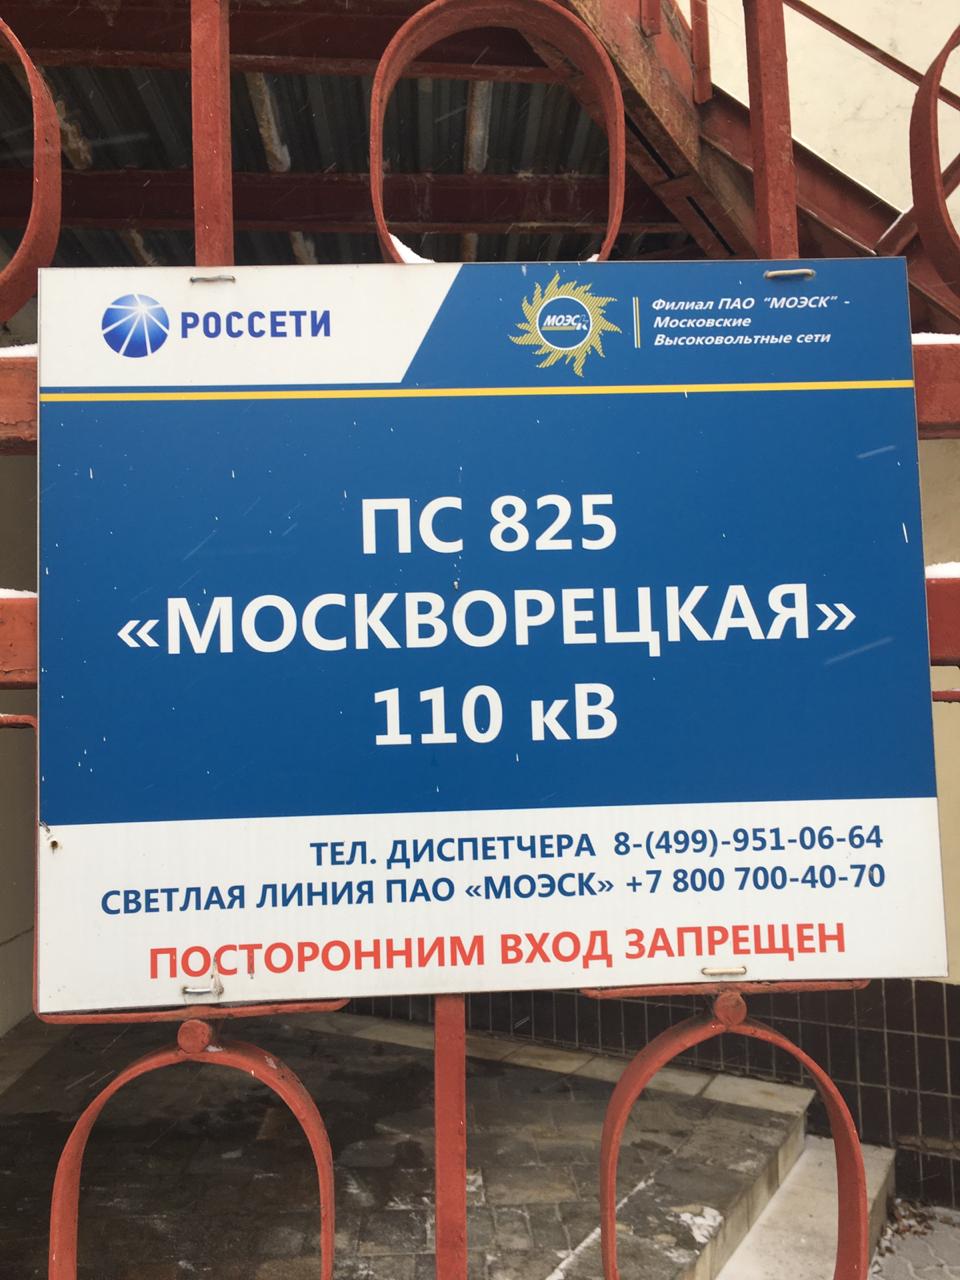 Проверка качества огнезащитной обработки кабеля ПС №825 «Москворецкая» в Москве